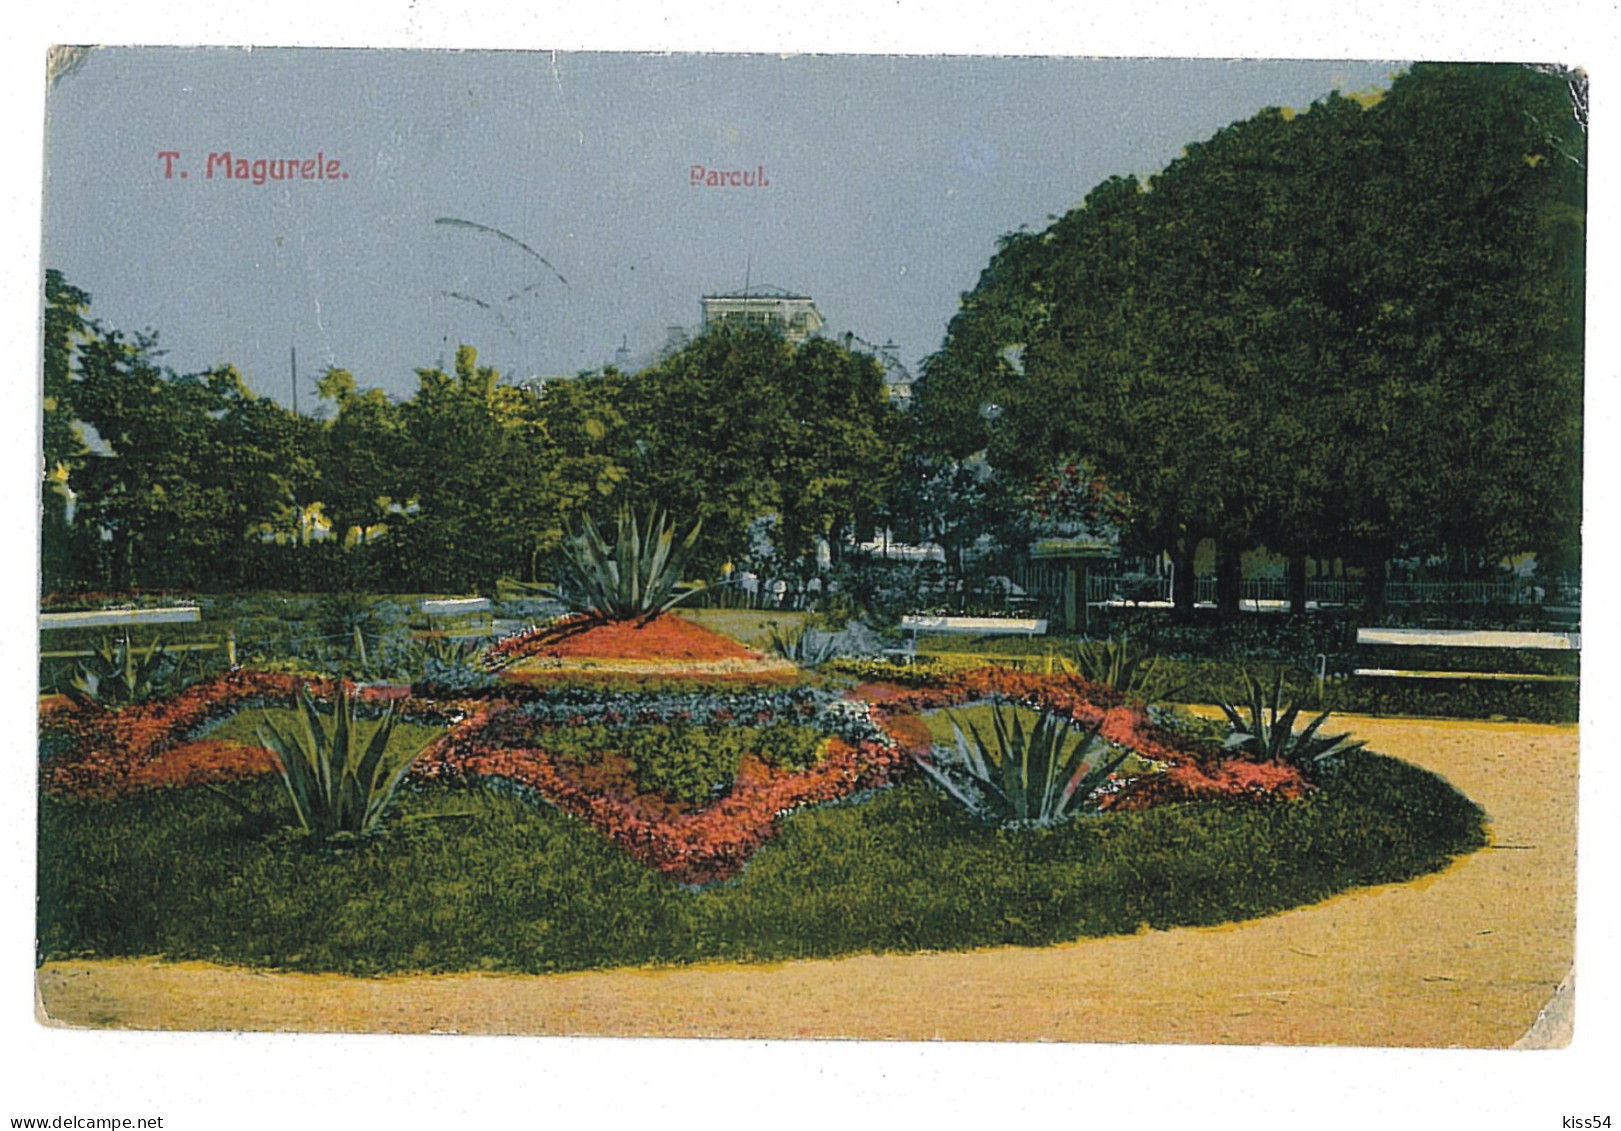 RO 43 - 10591 TURNU-MAGURELE, Teleorman, Park, Romania - Old Postcard - Used - Rumänien